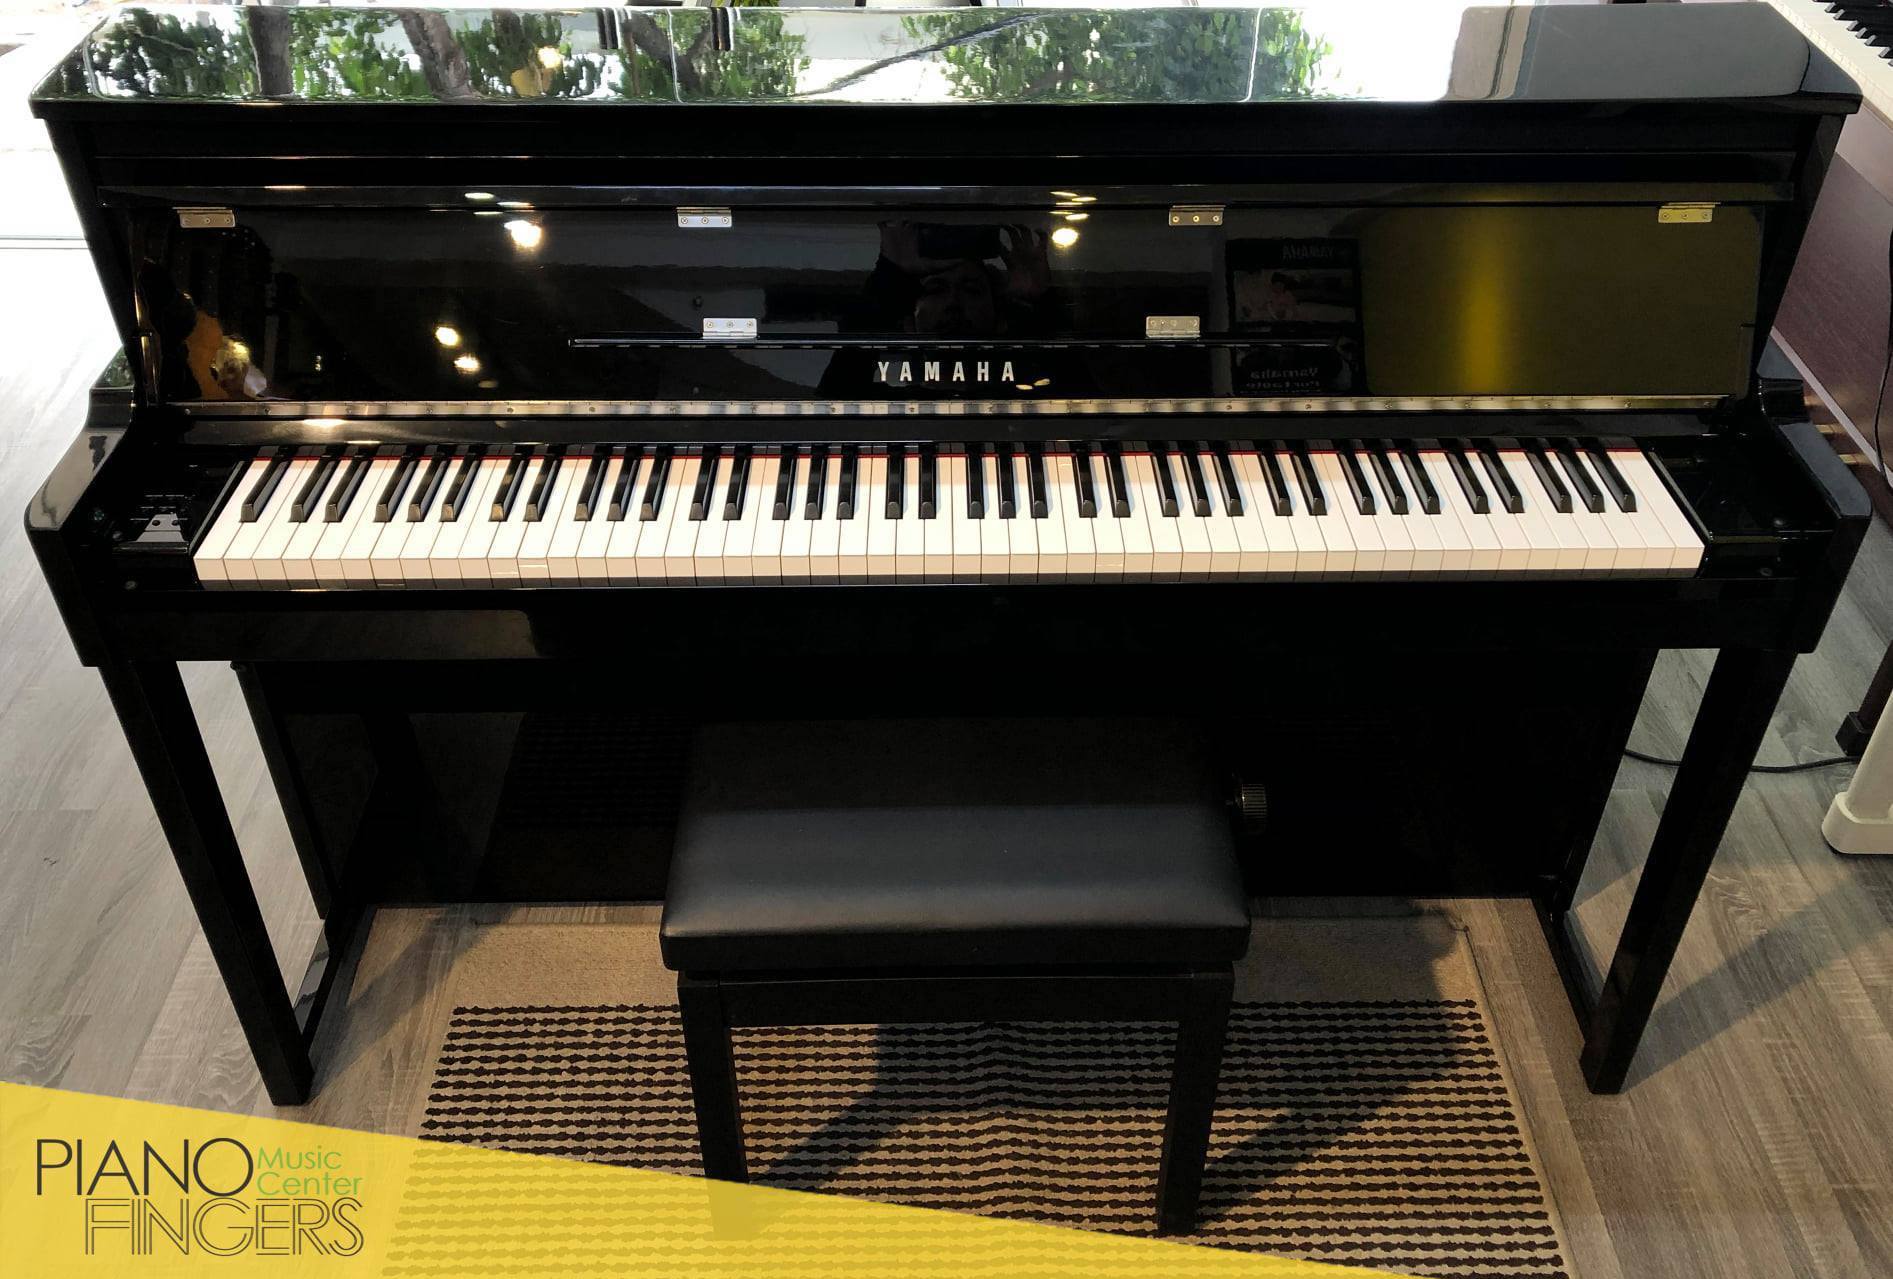 Năm sản xuất đàn piano điện Yamaha từ năm 2010 đến nay